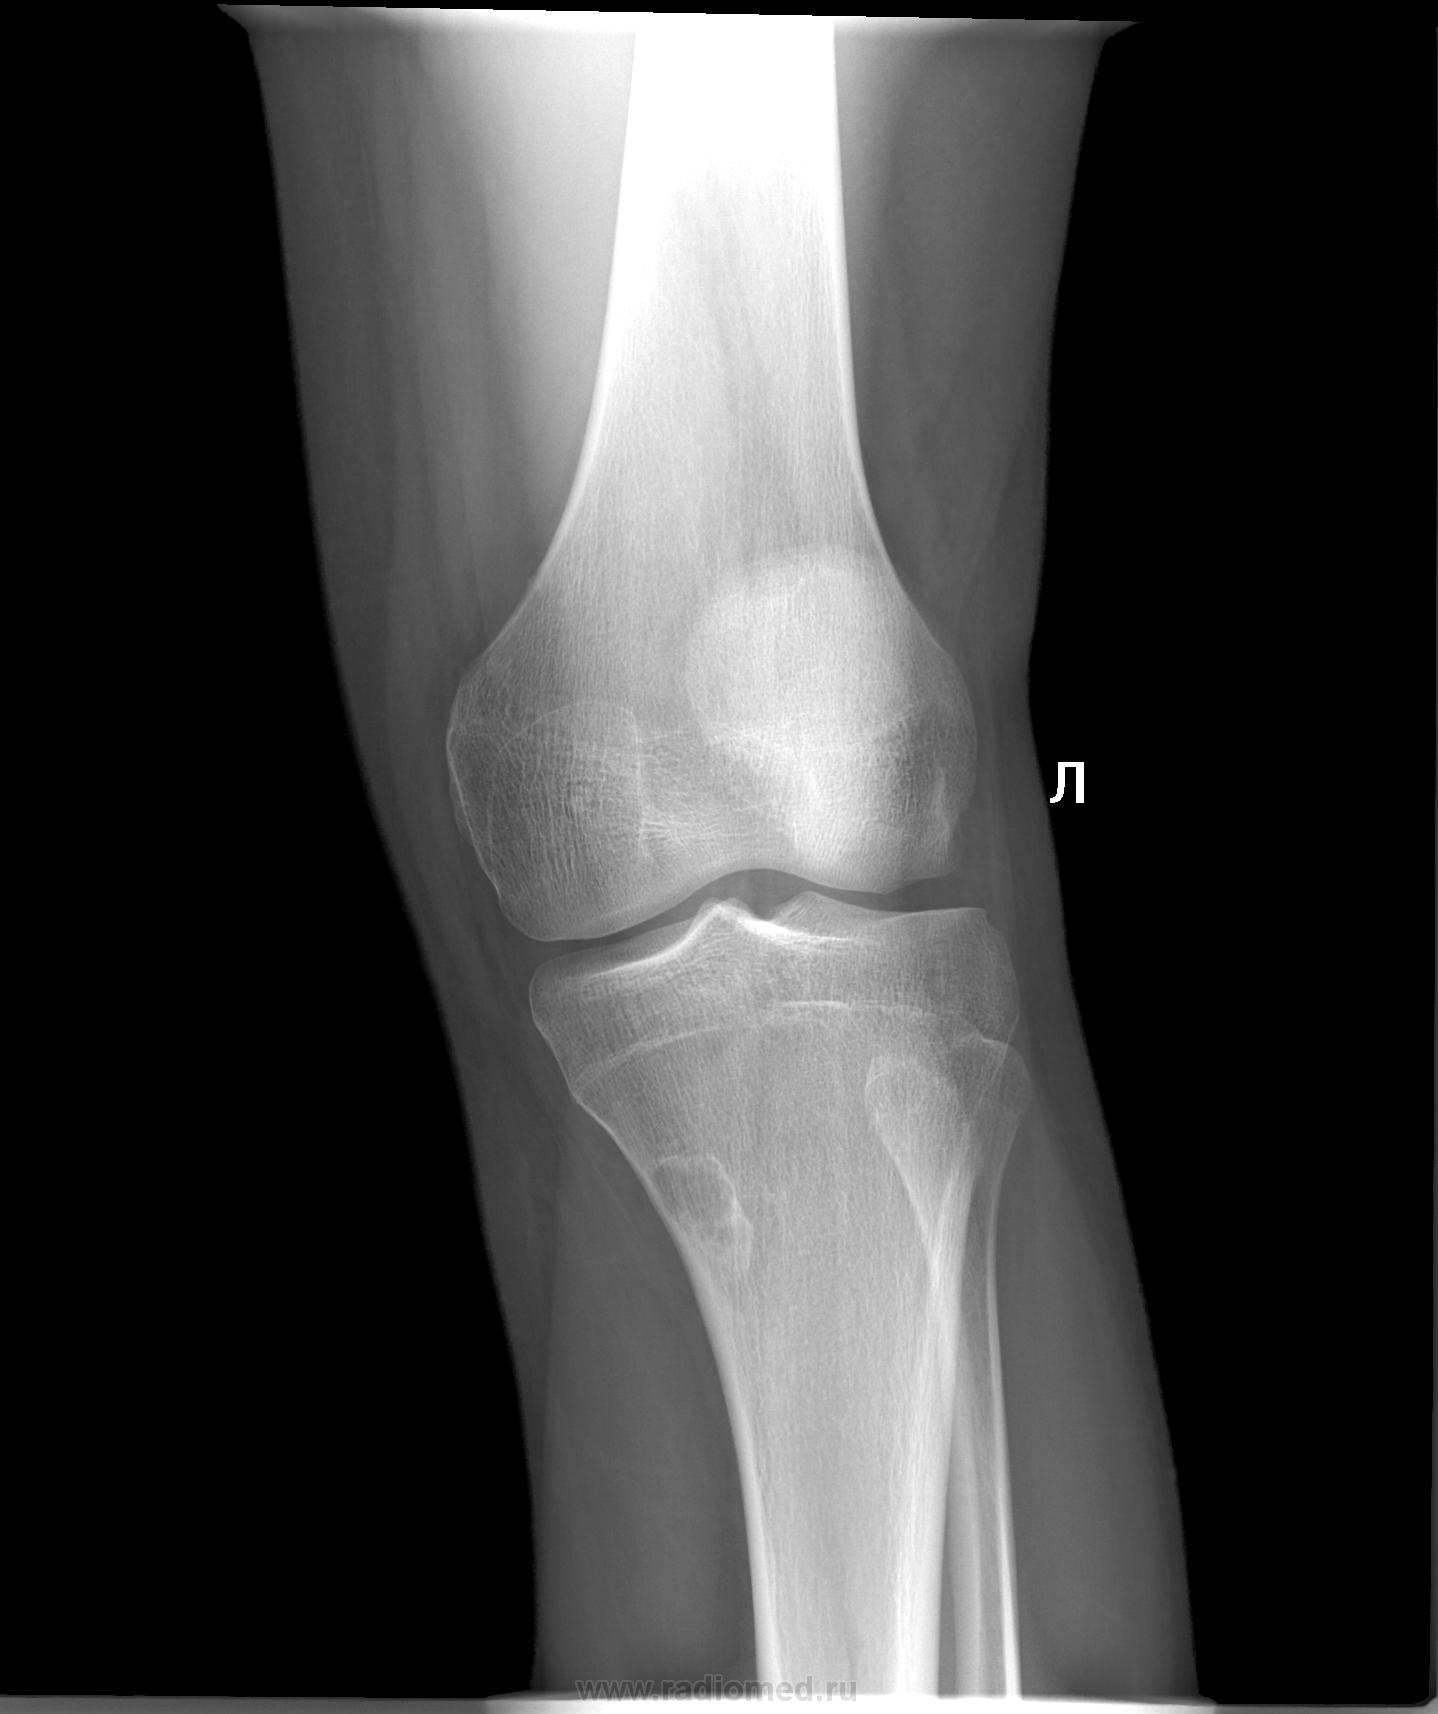 Фото здорового коленного сустава человека рентген